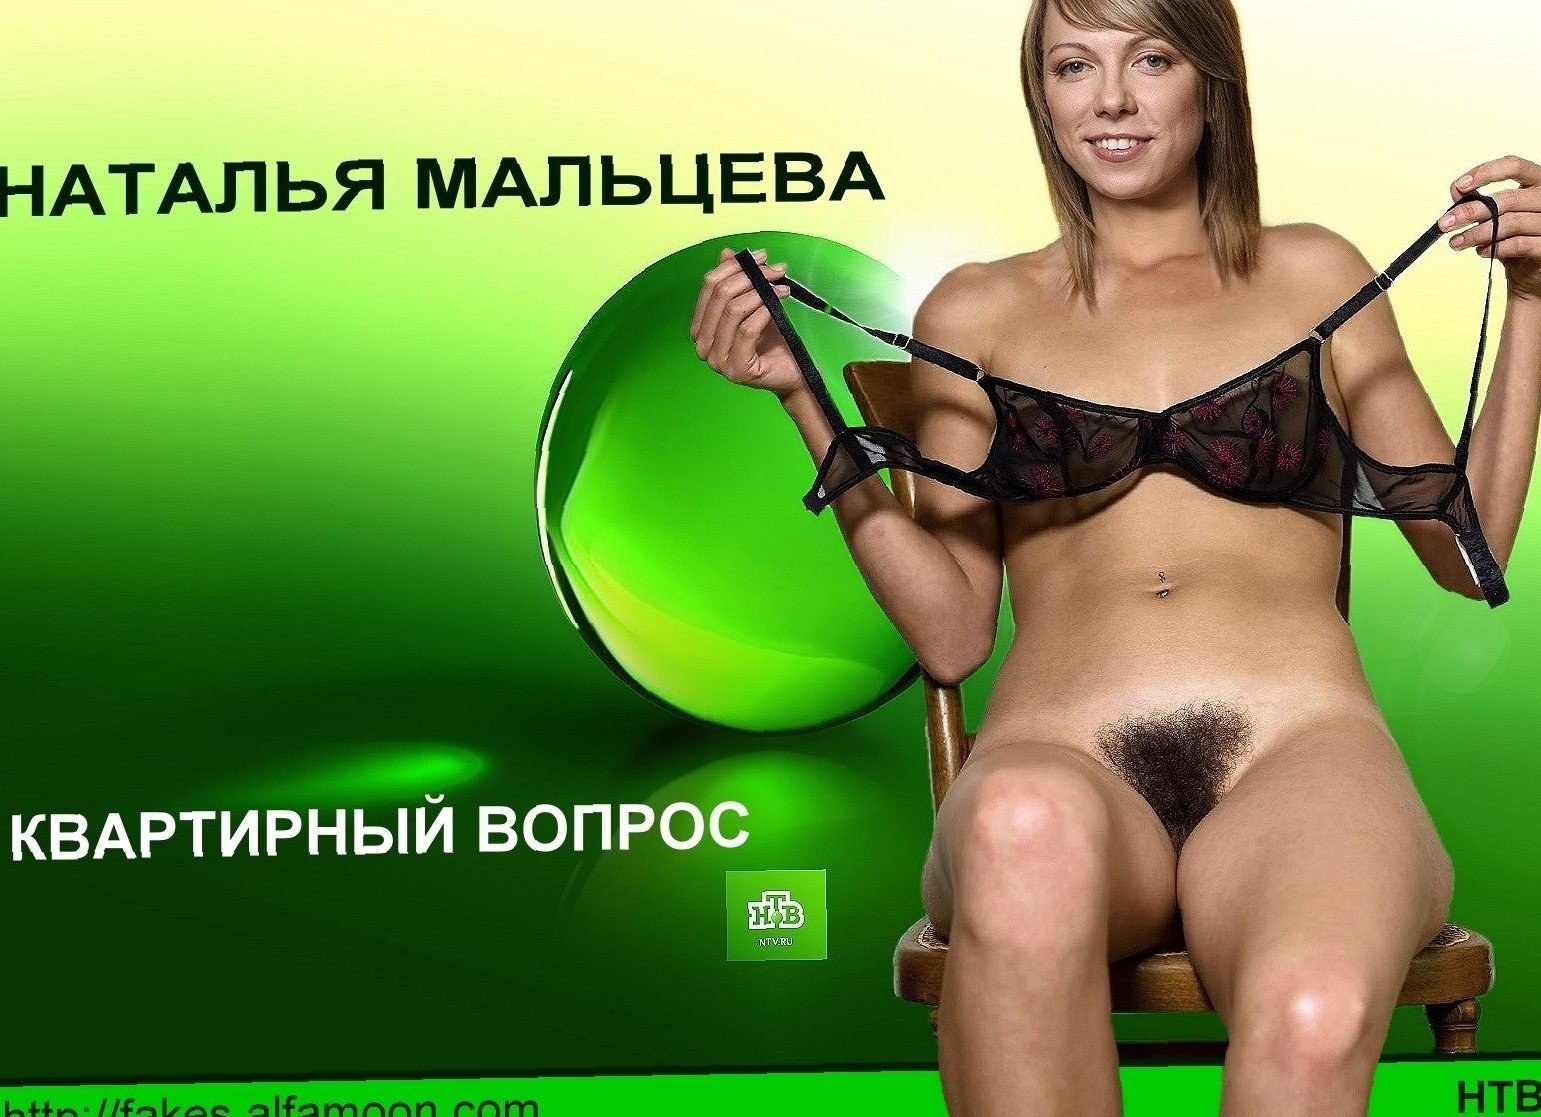 Голая украинская телеведущая показала всем задницу (ФОТО 18+)